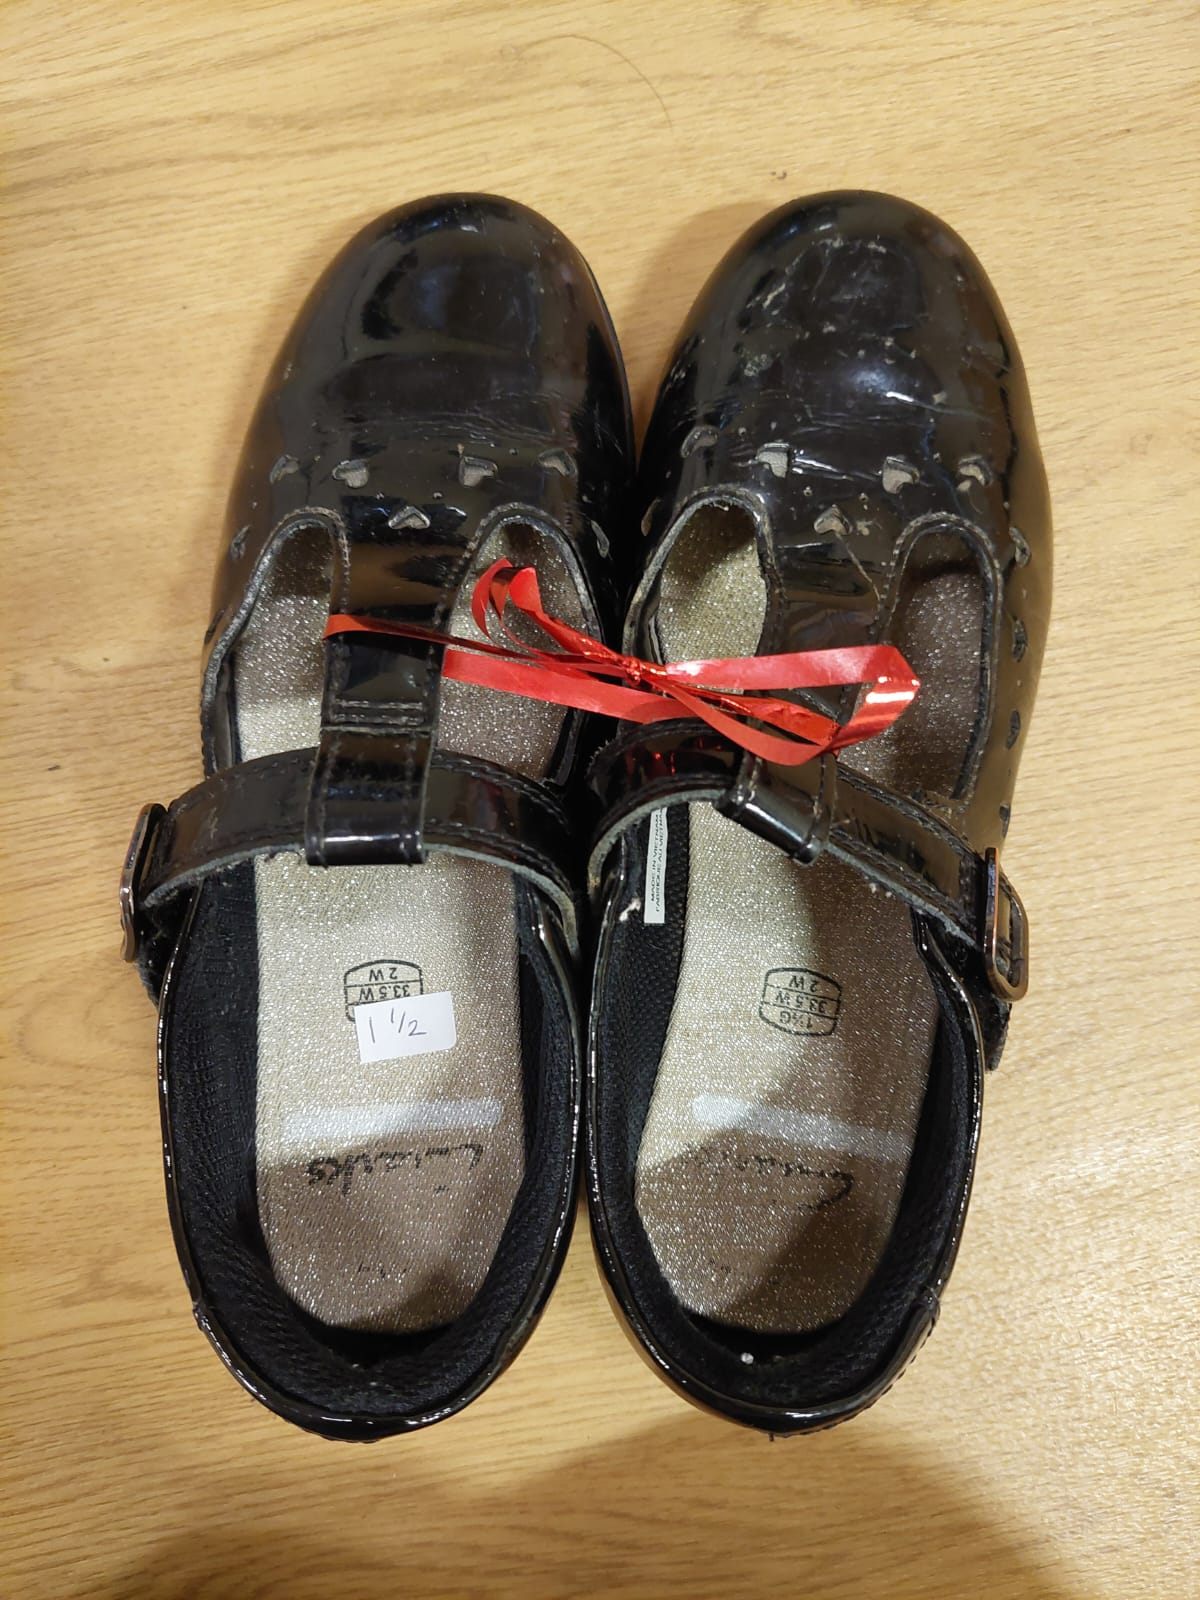 Girls shoes Size 1.5 (older)